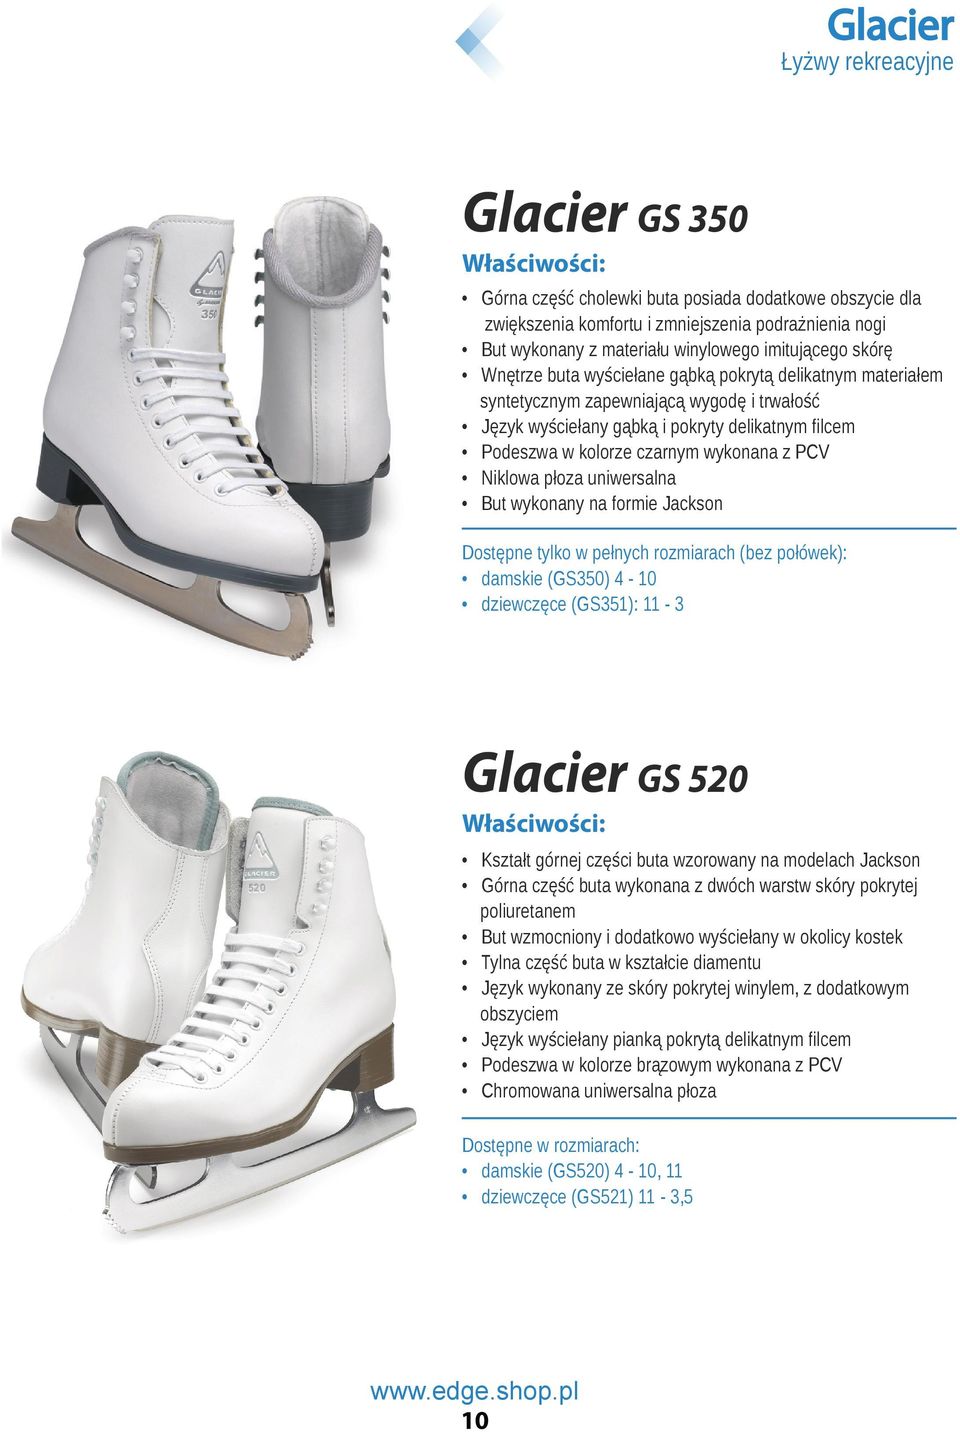 PCV Niklowa płoza uniwersalna But wykonany na formie Jackson Dostępne tylko w pełnych rozmiarach (bez połówek): damskie (GS350) 4-10 dziewczęce (GS351): 11-3 Glacier GS 520 Kształt górnej części buta